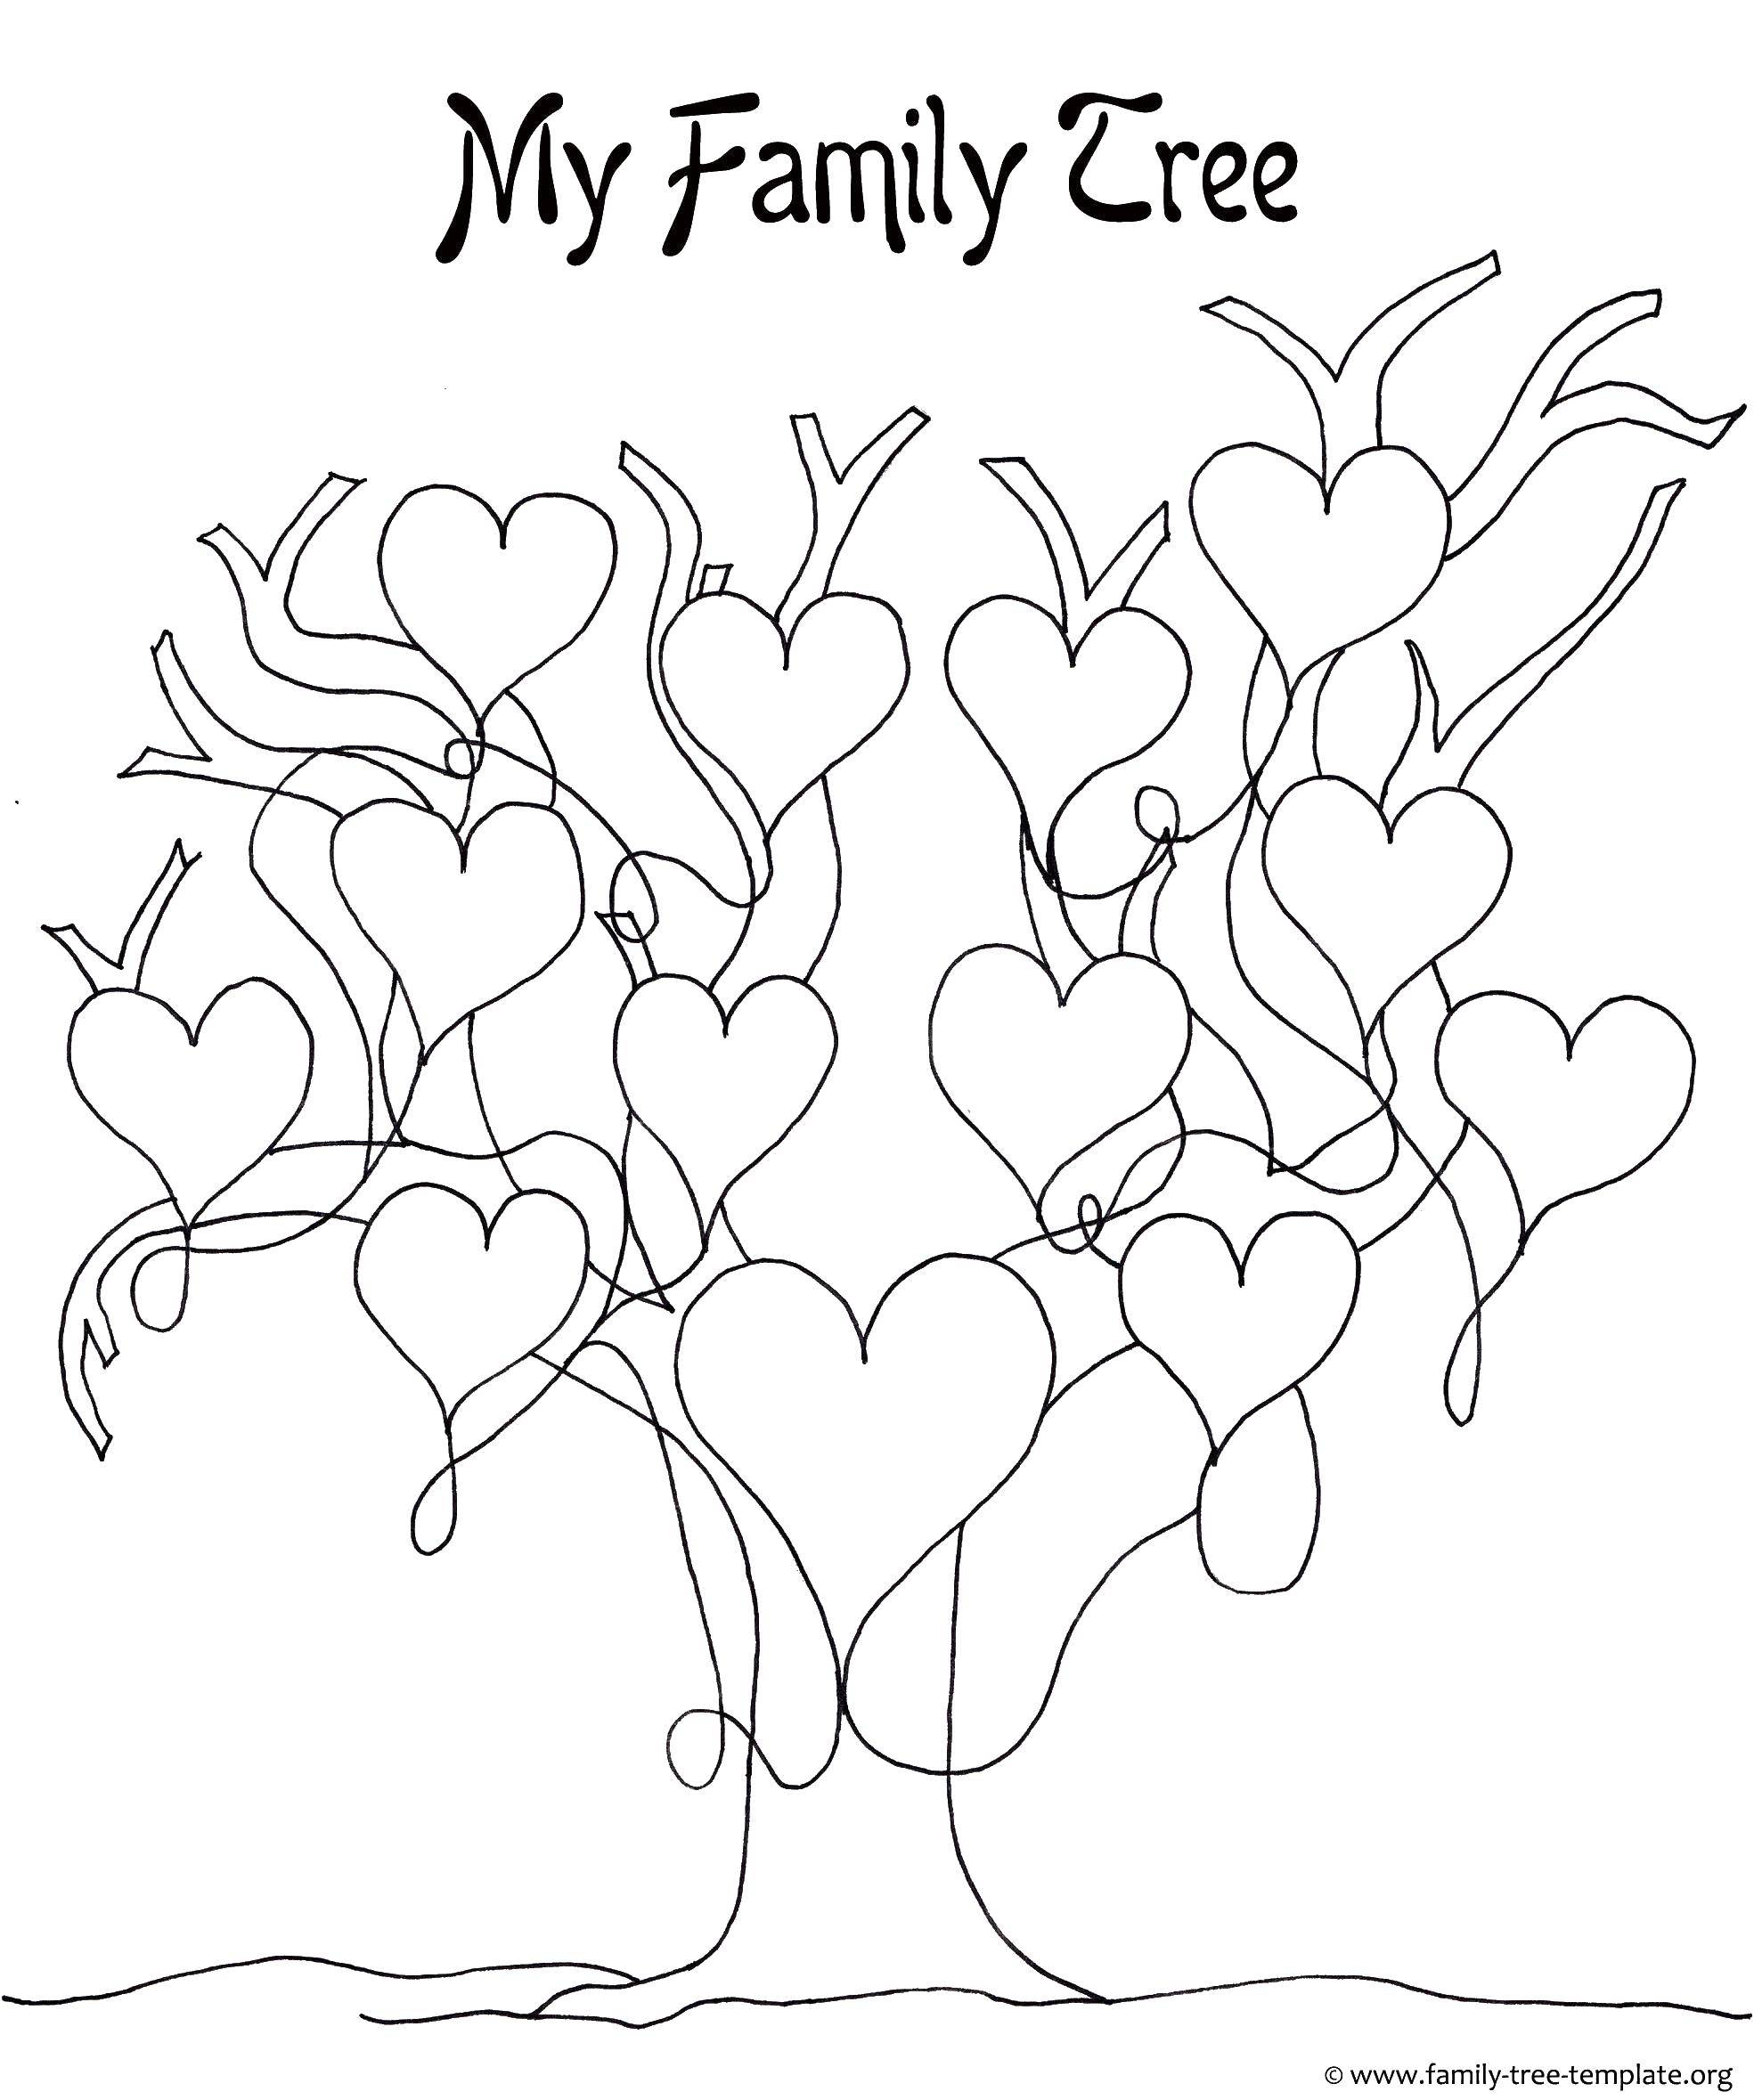 Название: Раскраска Семейное дерево. Категория: Семейное дерево. Теги: семейное дерево, сердечки.